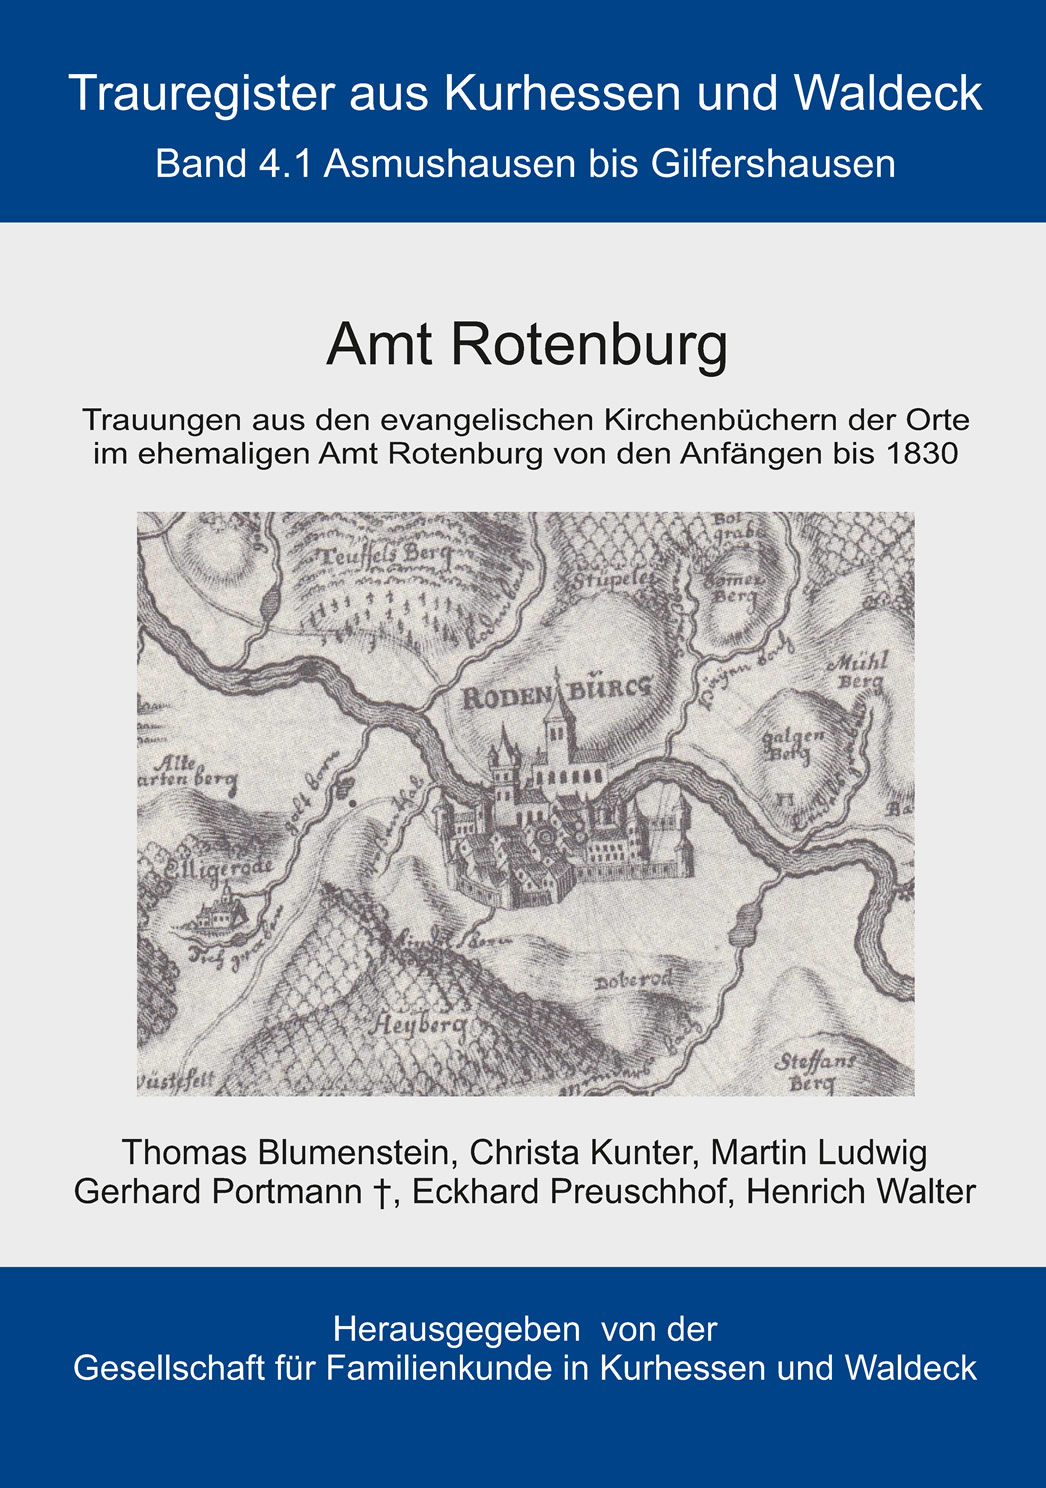 Trauregister aus Kurhessen und Waldeck, Band 4.1 Amt Rotenburg